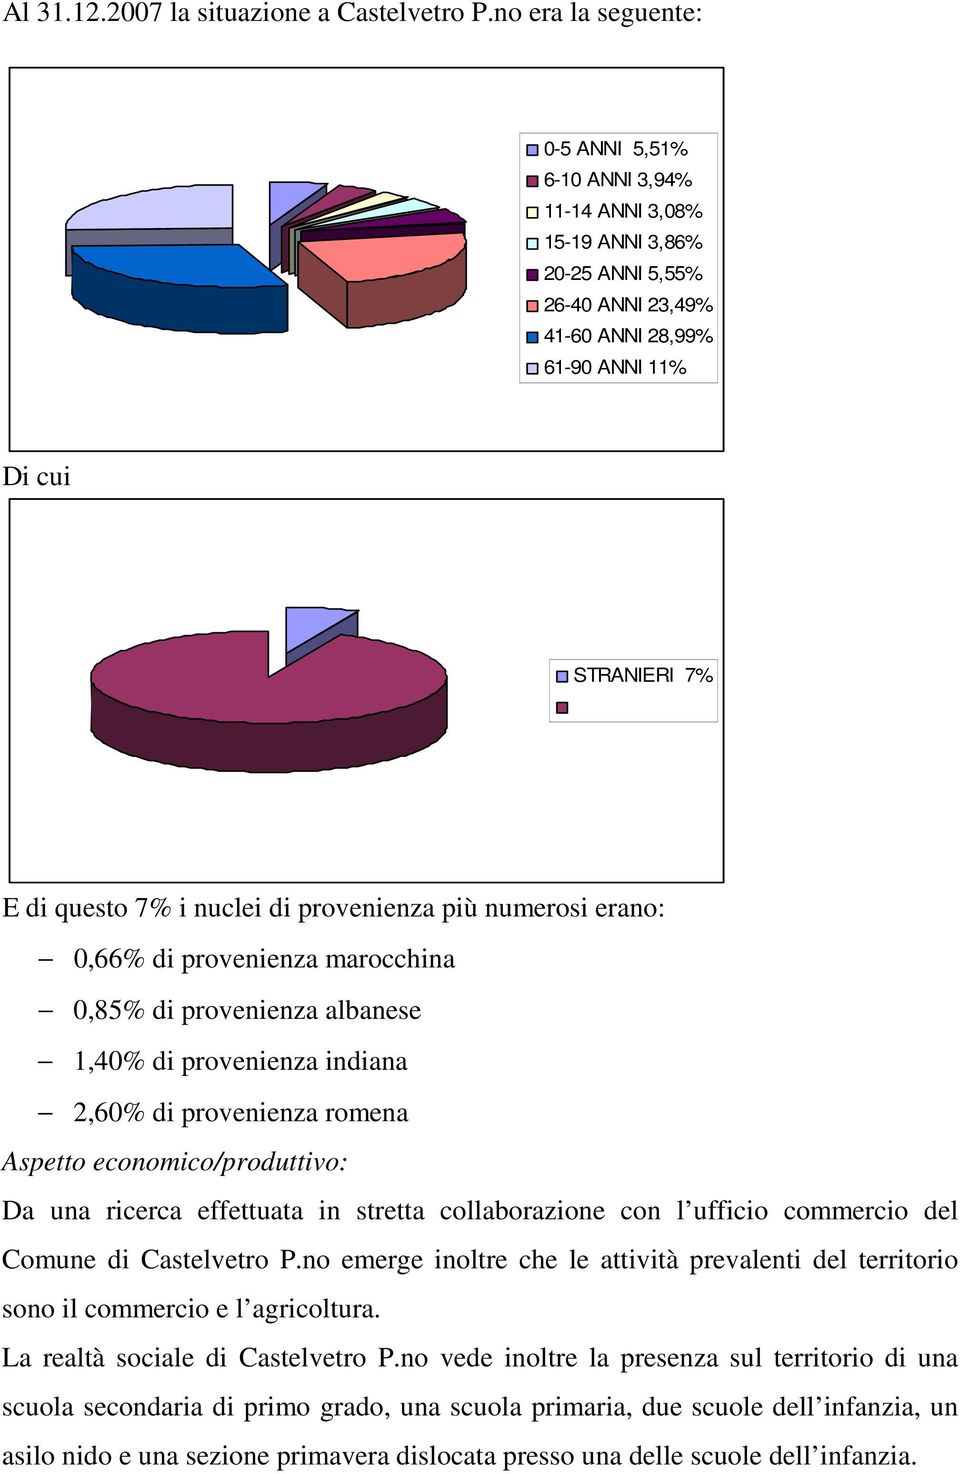 provenienza più numerosi erano: 0,66% di provenienza marocchina 0,85% di provenienza albanese 1,40% di provenienza indiana 2,60% di provenienza romena Aspetto economico/produttivo: Da una ricerca